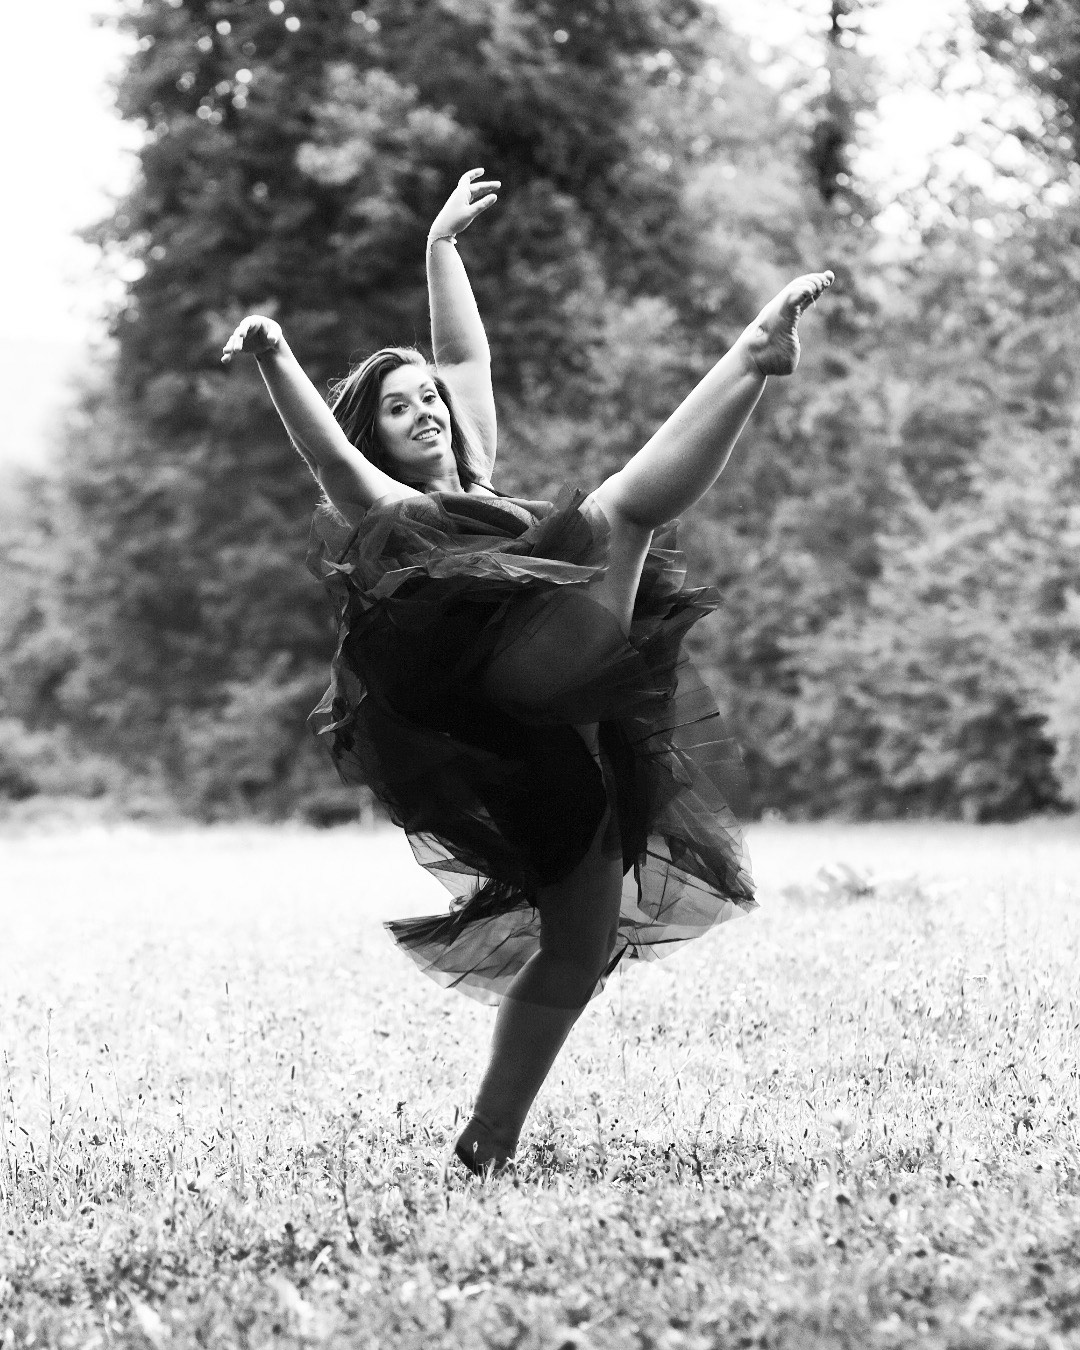 Tänzerin vom Tanzstudio SHINE in einem Park, sie trägt ein schwarzes Kleid, beide Arme sind nach oben gestreckt und ein Bein auf Kopfhöhe in der Luft, die Zehen gestreckt, das linke Bein am Boden ist leicht gebeugt, der Oberkörper ist leicht nach hinten gelehnt, der Blick geht nach vorne, schwarz-weiß-Aufnahme